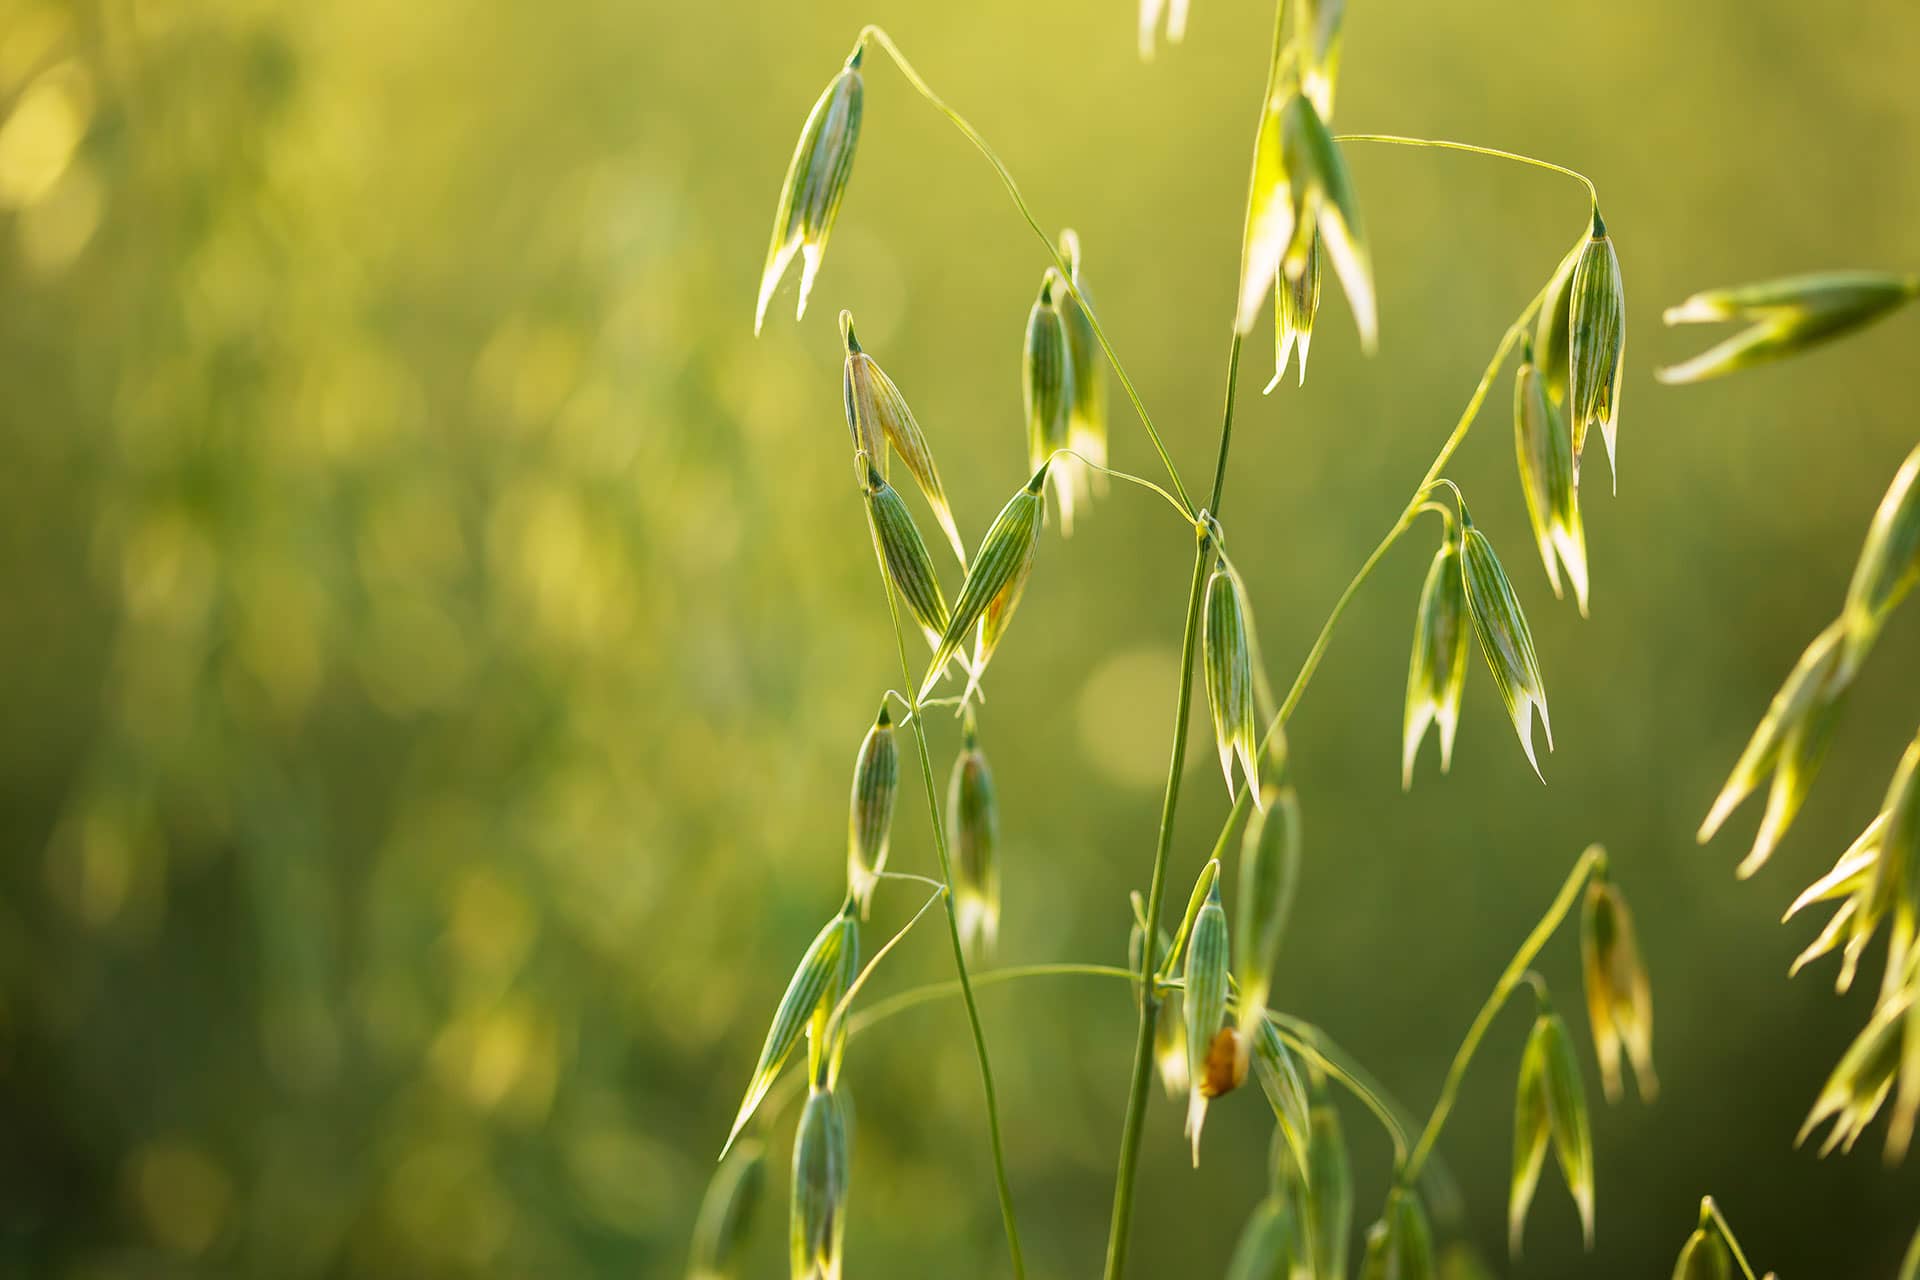 A scene of sunlit green oats